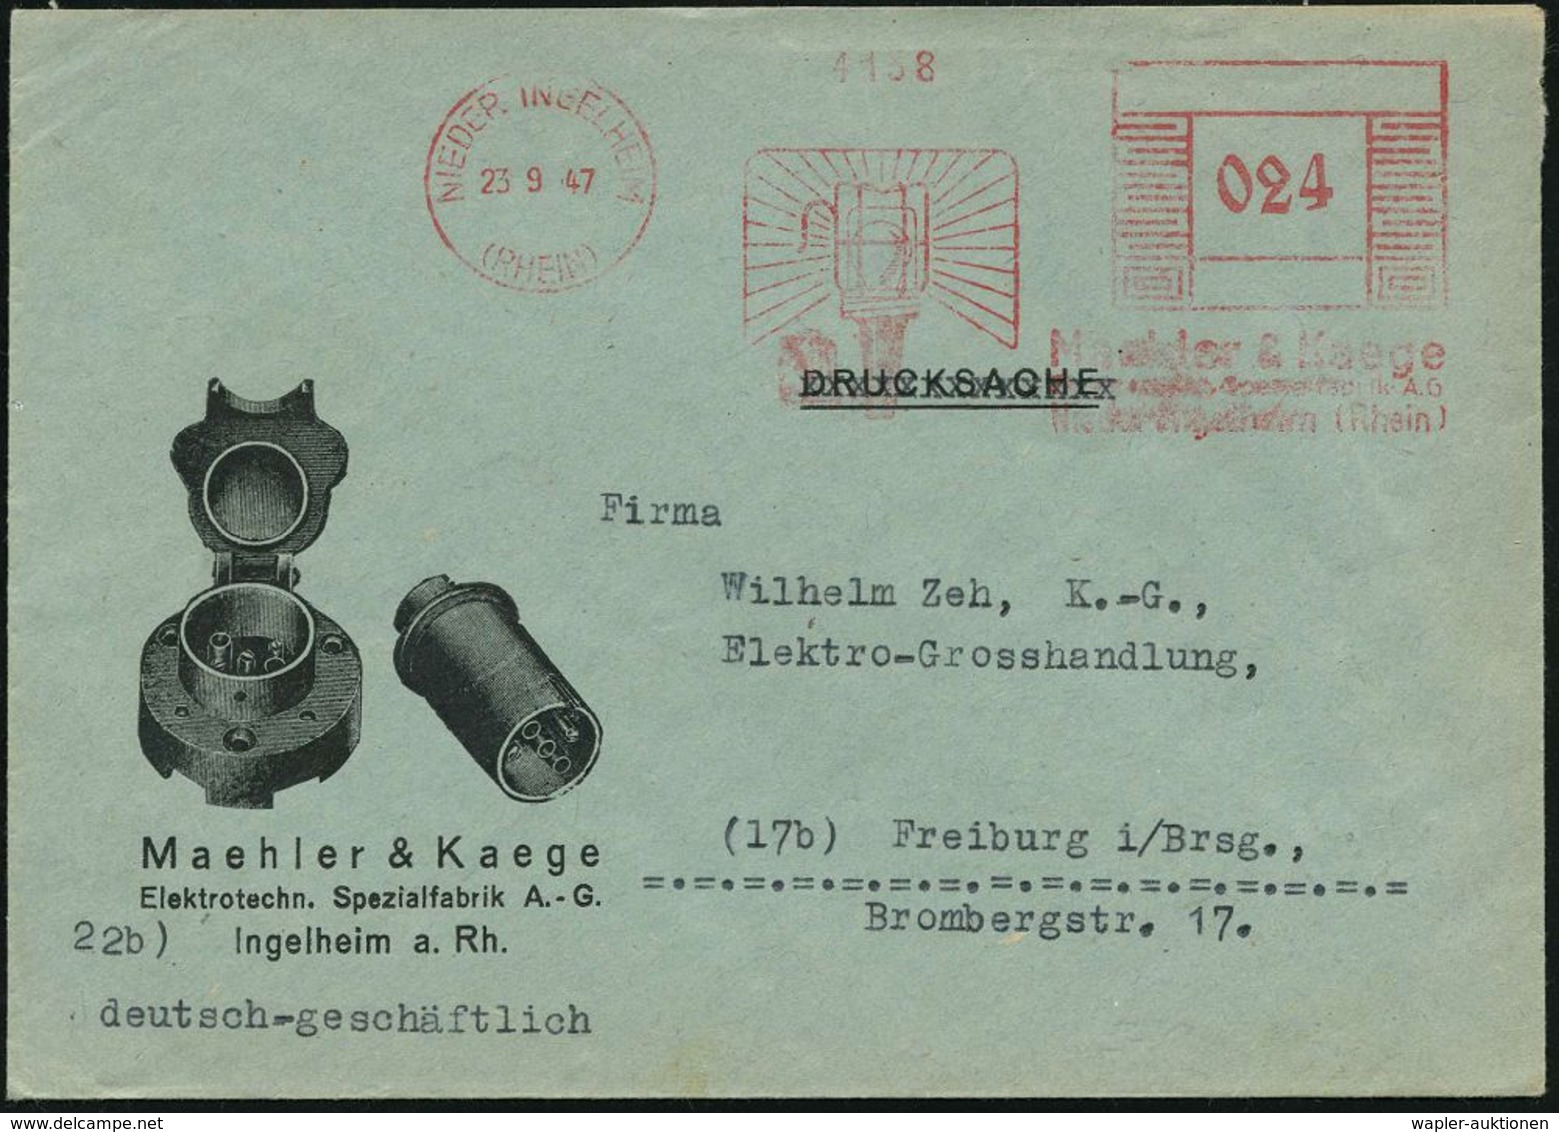 ELEKTRISCHE APPARATE & MASCHINEN : NIEDER INGELHEIM/ (RHEIN)/ Maehler & Kaege.. 1947 (23.9.) Aptierter AFS "Mäanderrecht - Elektrizität